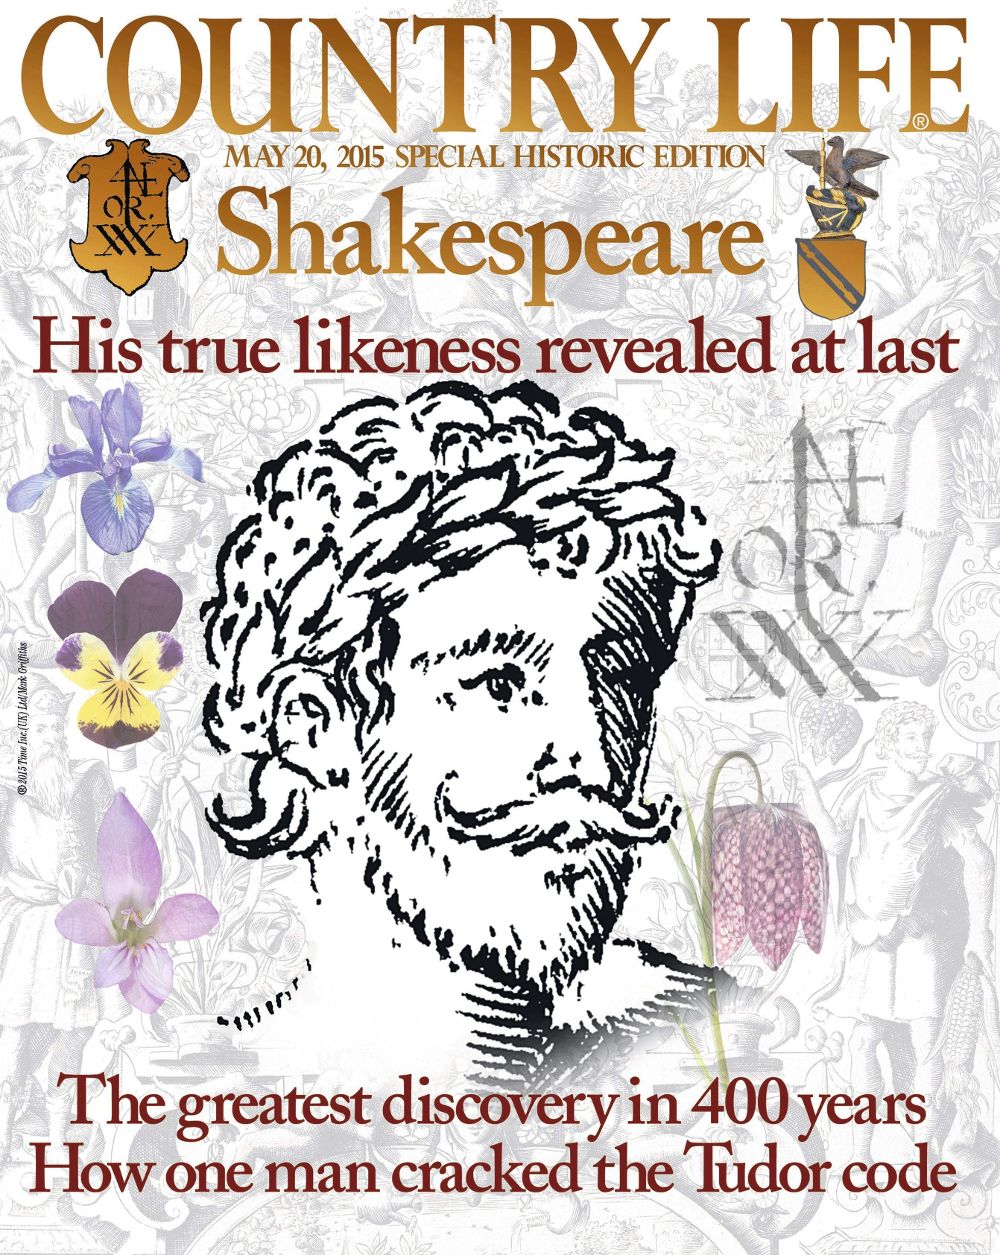 Imagen facilitada hoy, miércoles, por la revista British Country Life de la portada de su último número que muestra lo que la revista considera es un retrato hasta ahora inédito realizado en vida de William Shakespeare. .